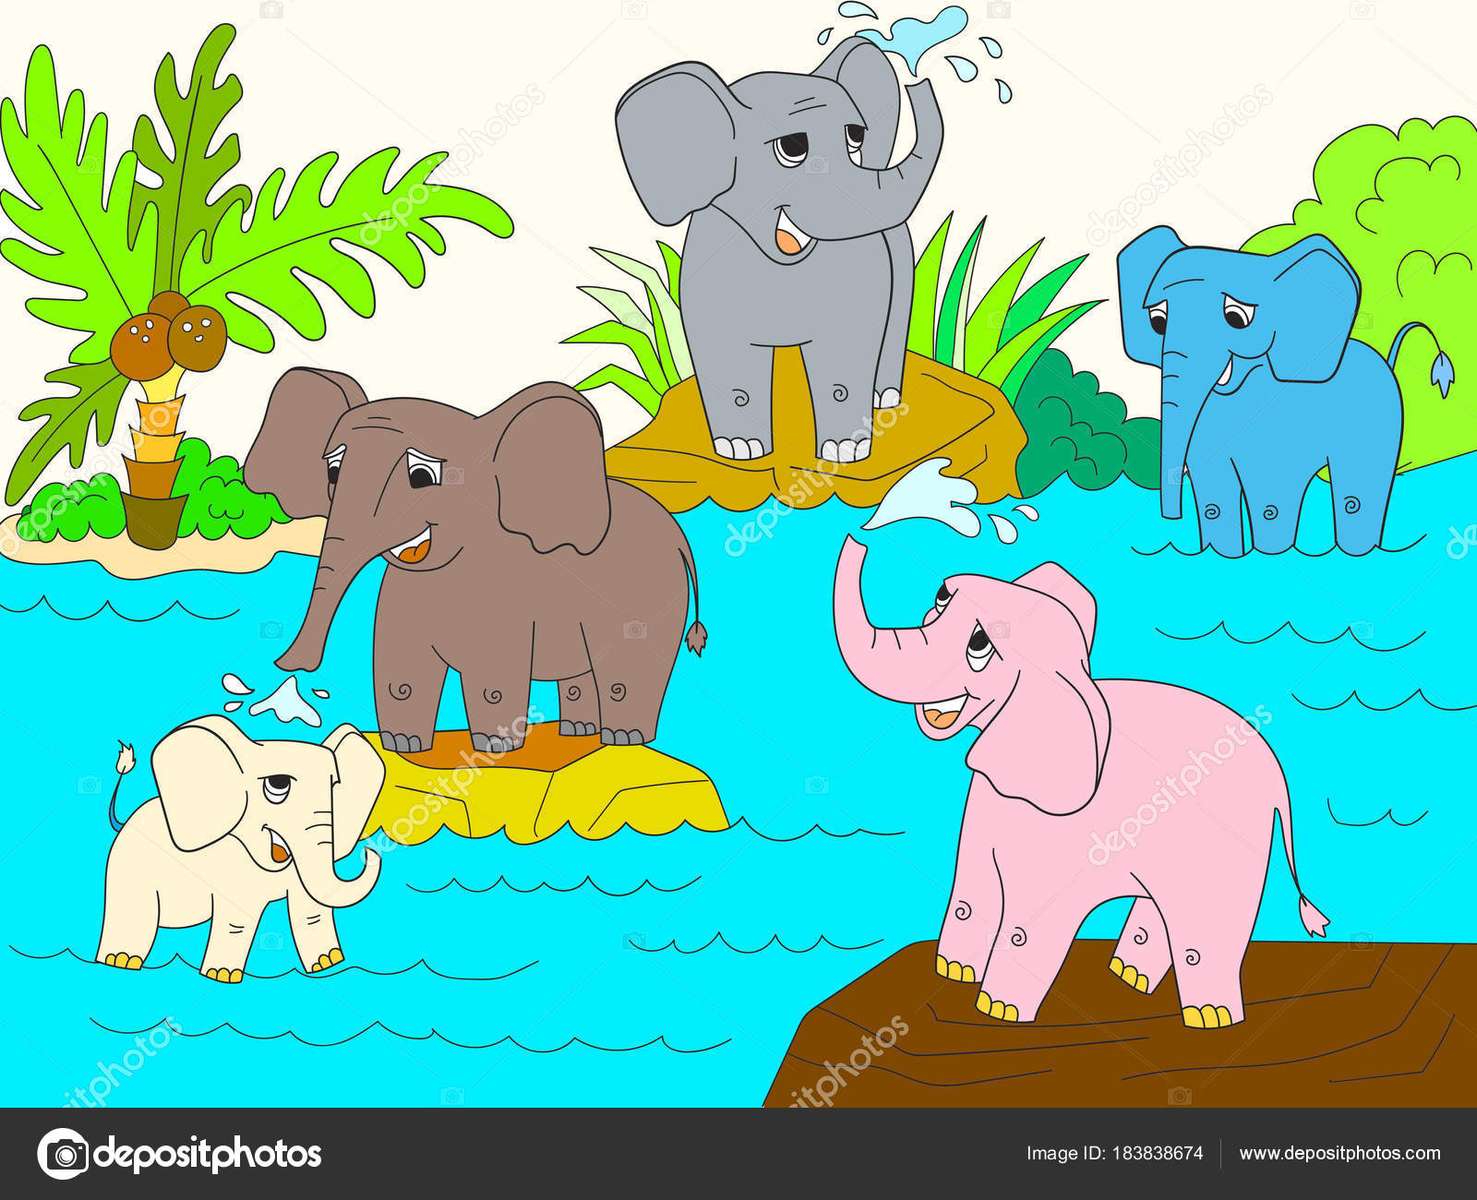 Слоненок пазл онлайн из фото